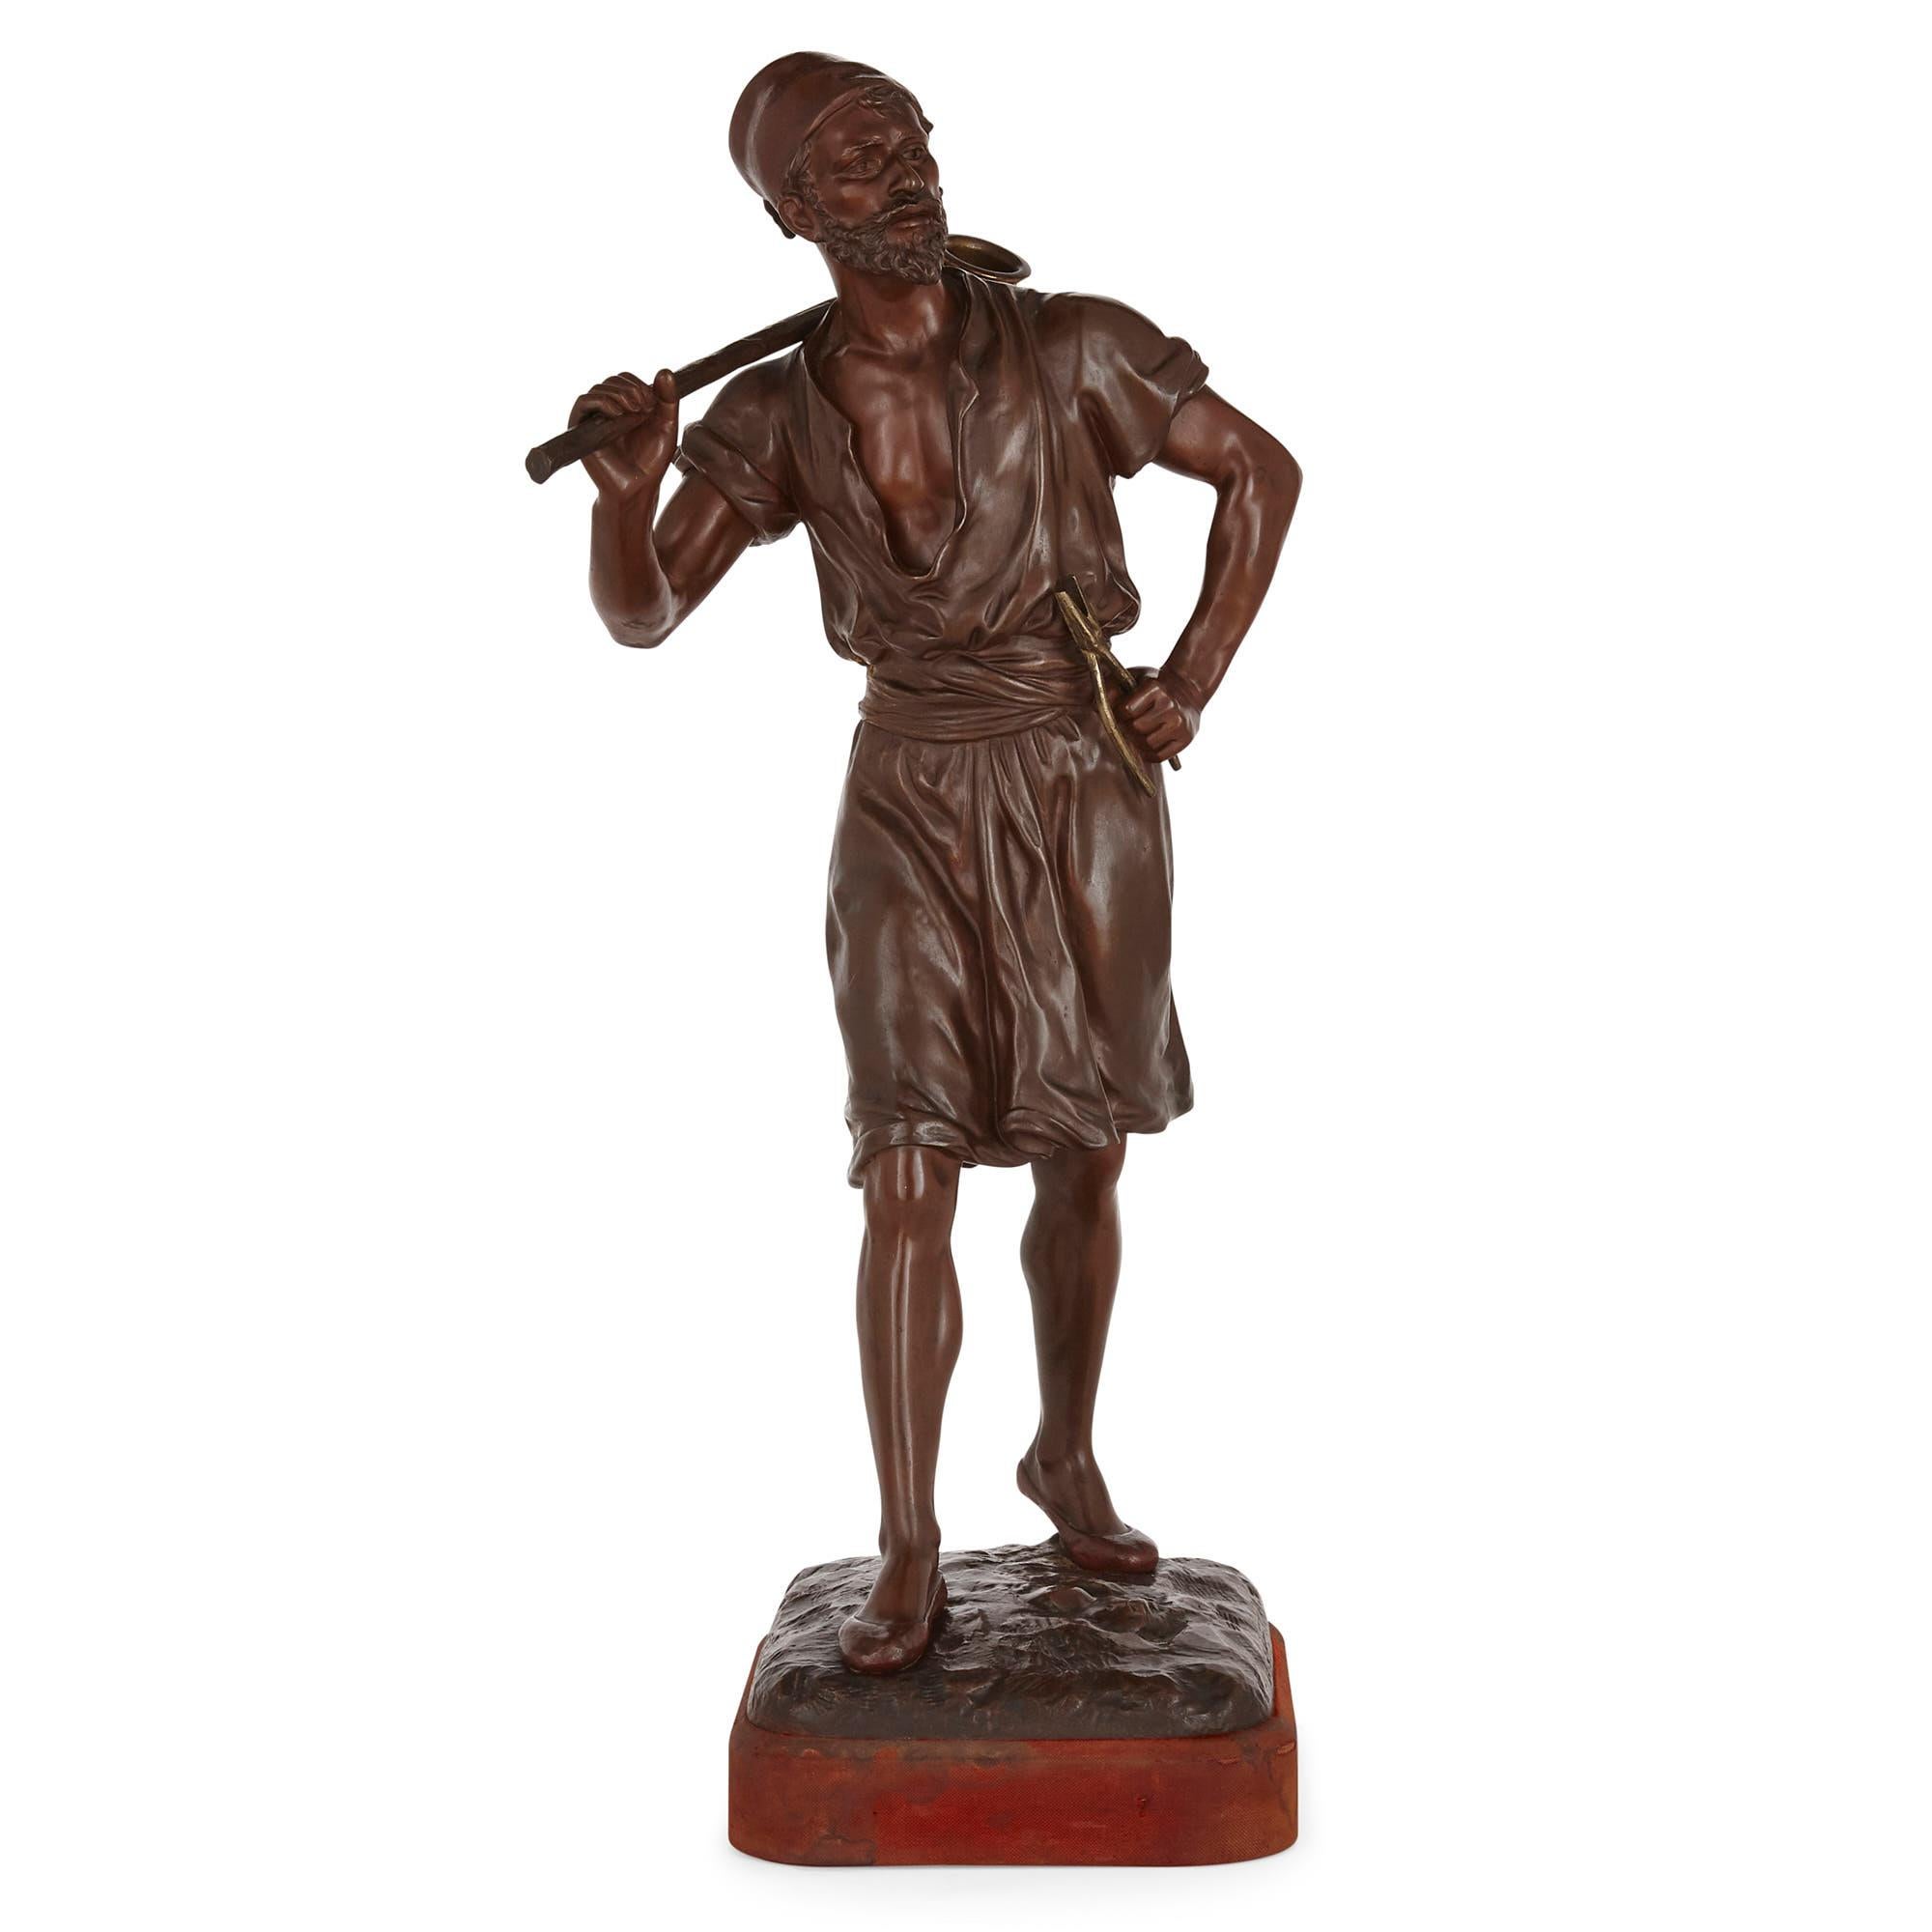 Cette grande figure en bronze a été sculptée par l'artiste français Marcel Debut et coulée par la fonderie Oudin à Marseille (